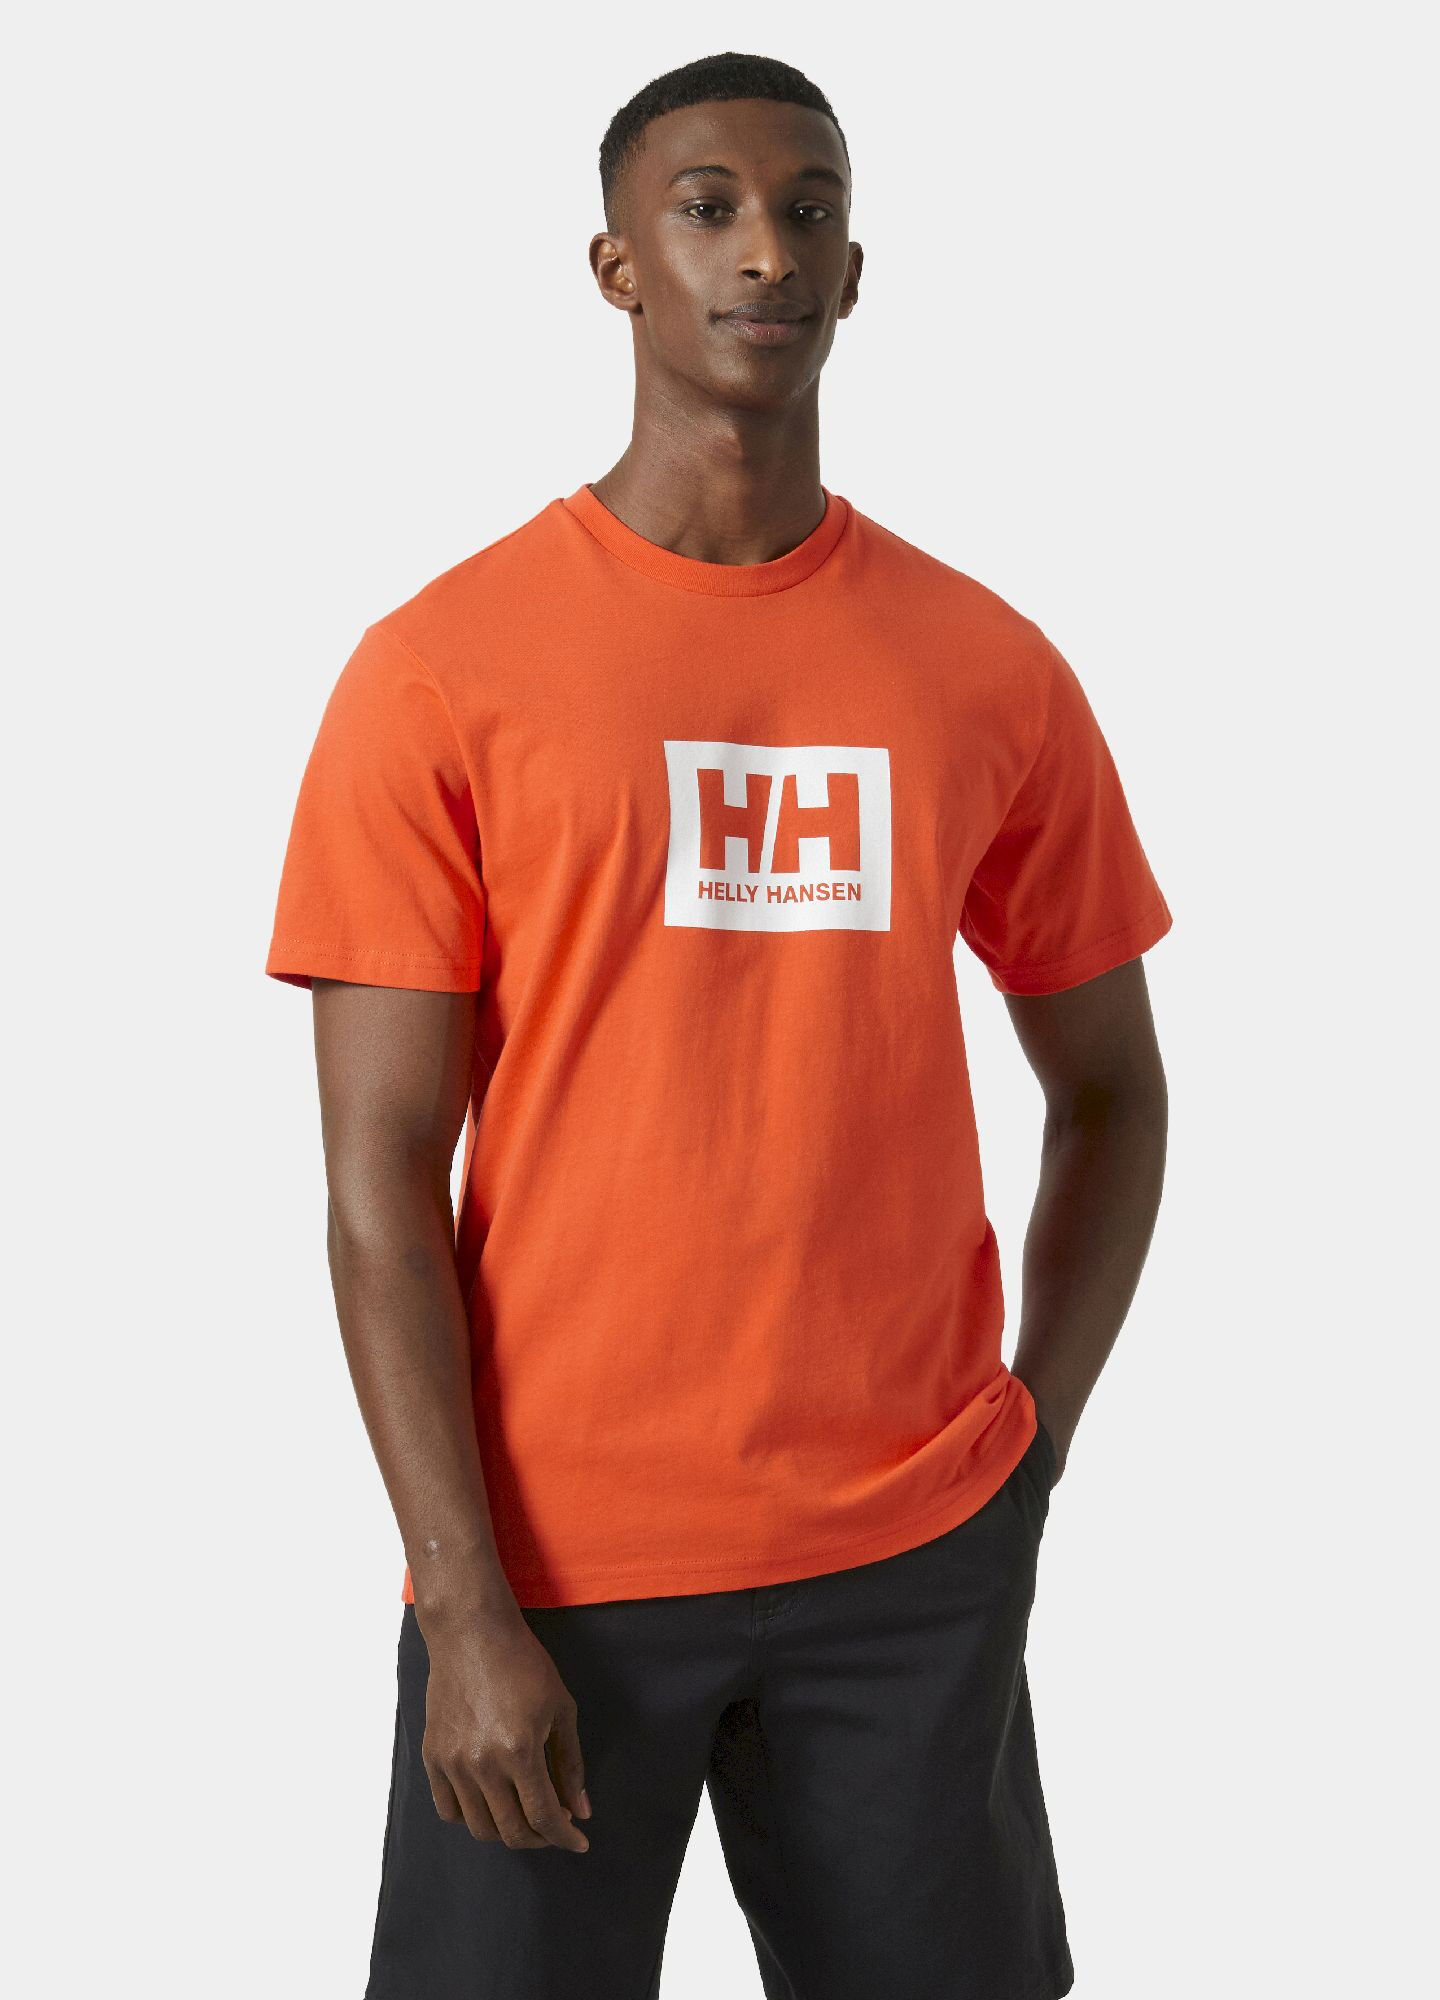 Helly Hansen HH Box T - T-shirt - Men's